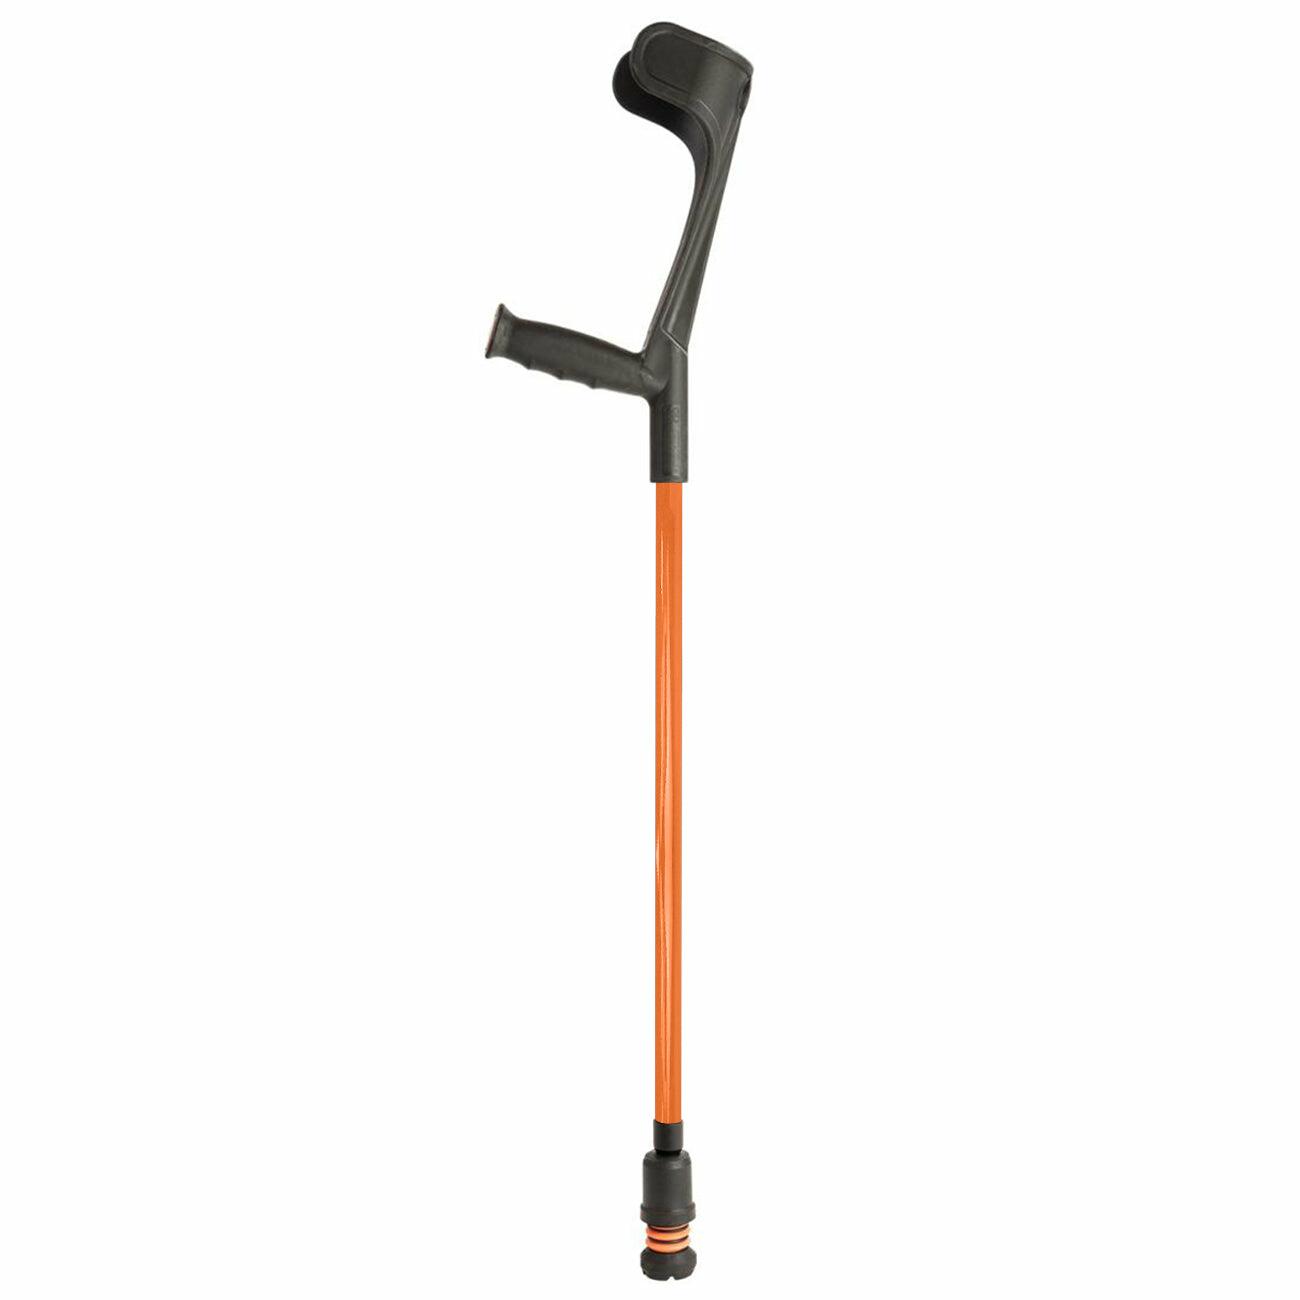 A single orange Flexyfoot Soft Grip Open Cuff Crutch